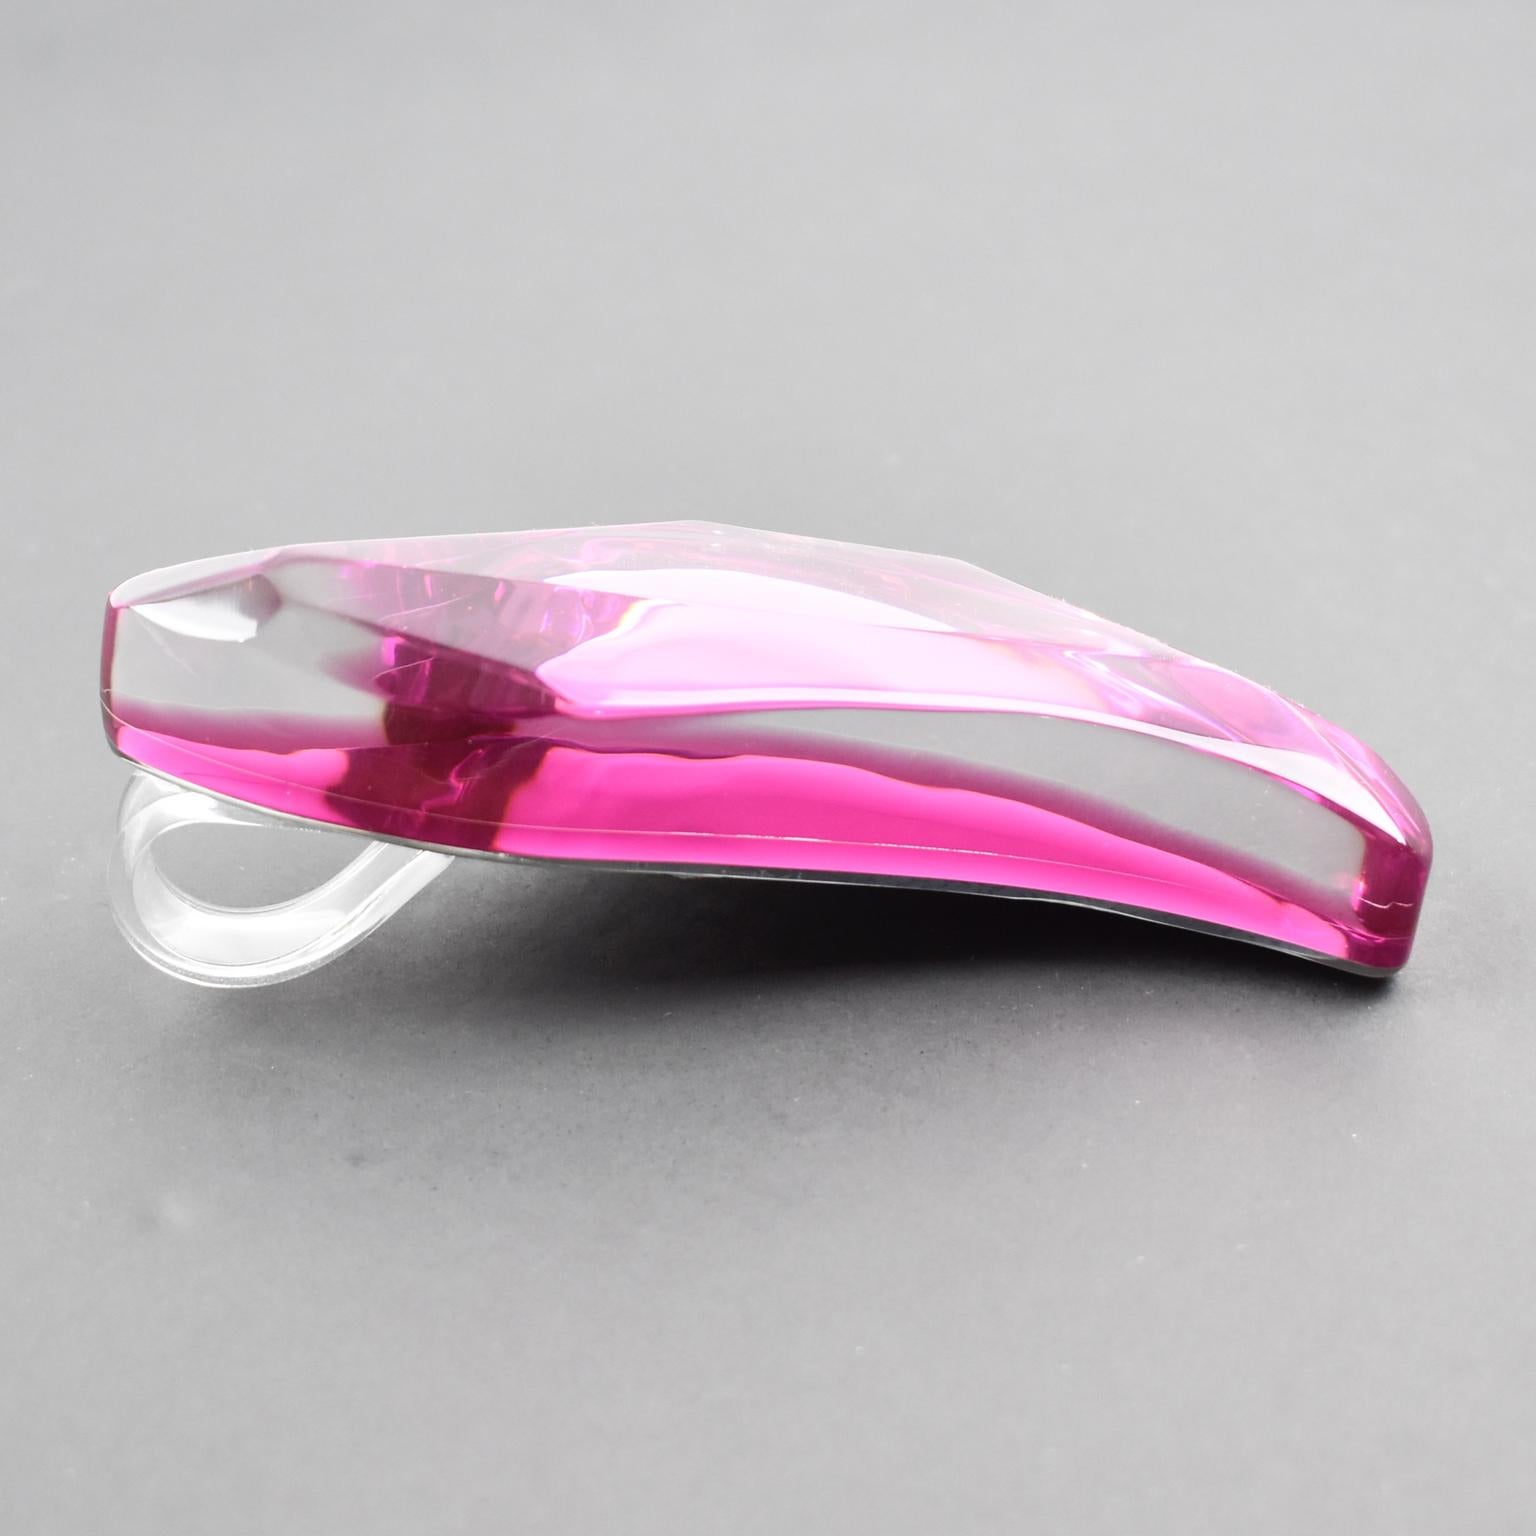 Kaso Sculptural Pink Lucite Rigid Choker Pendant Necklace For Sale 4